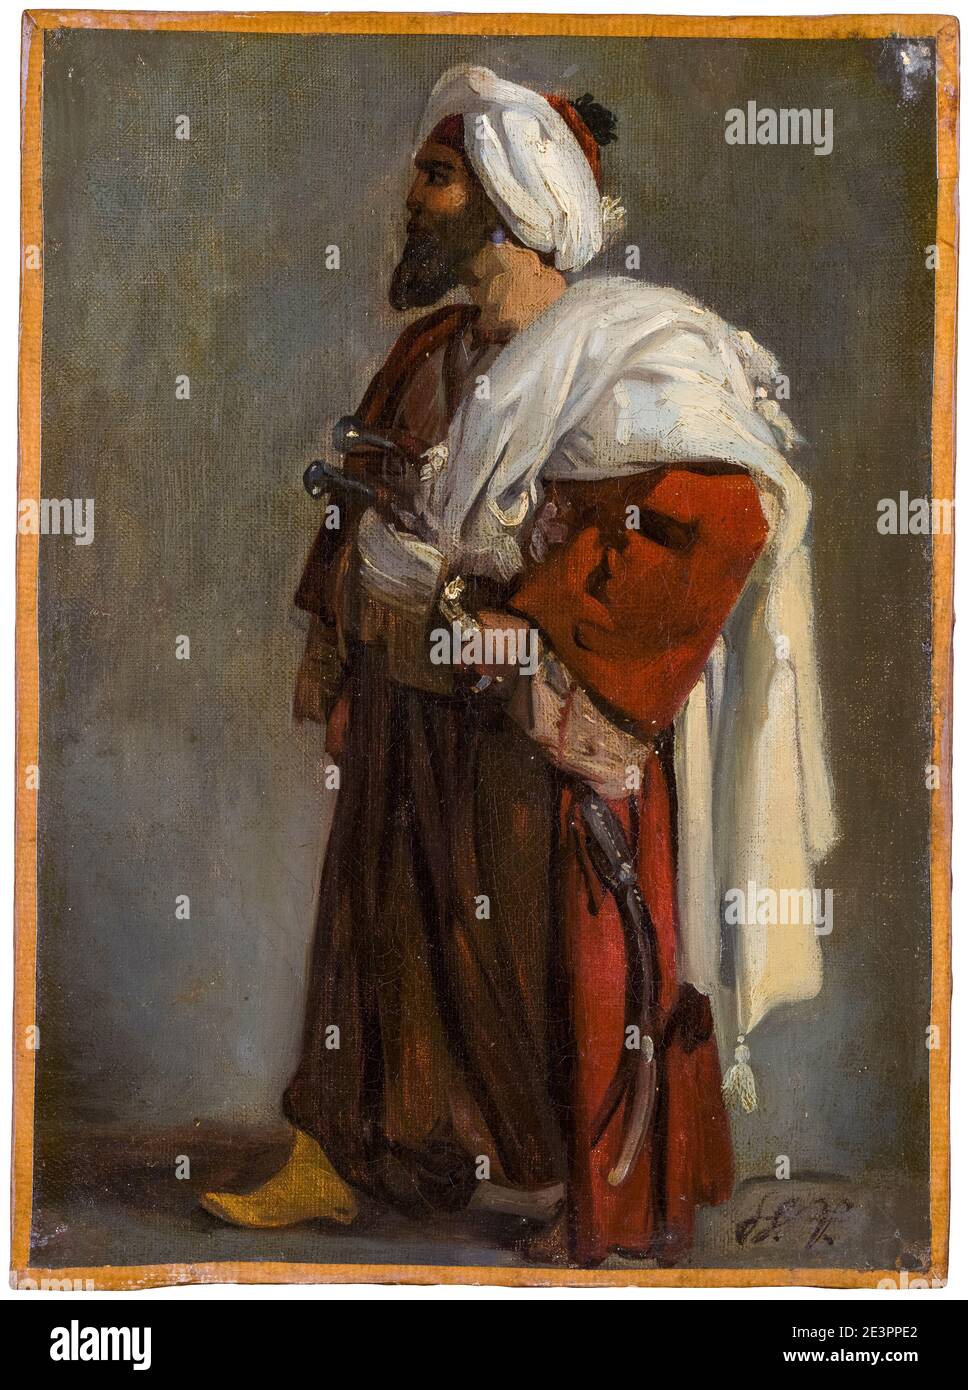 Horace Vernet, guerrero árabe, pintura, 1817-1822 Foto de stock